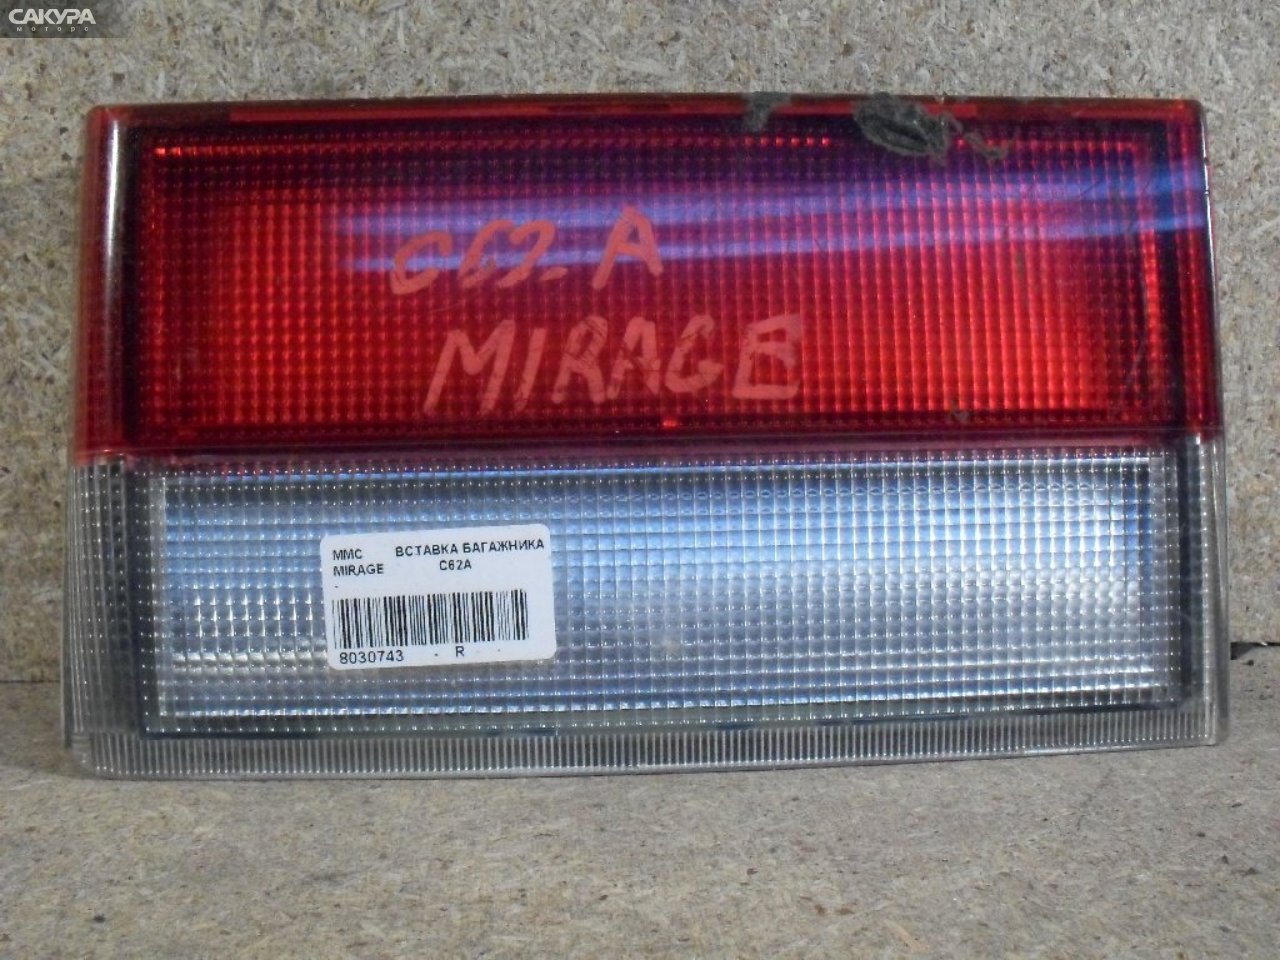 Фонарь вставка багажника правый Mitsubishi Mirage C62A: купить в Сакура Абакан.